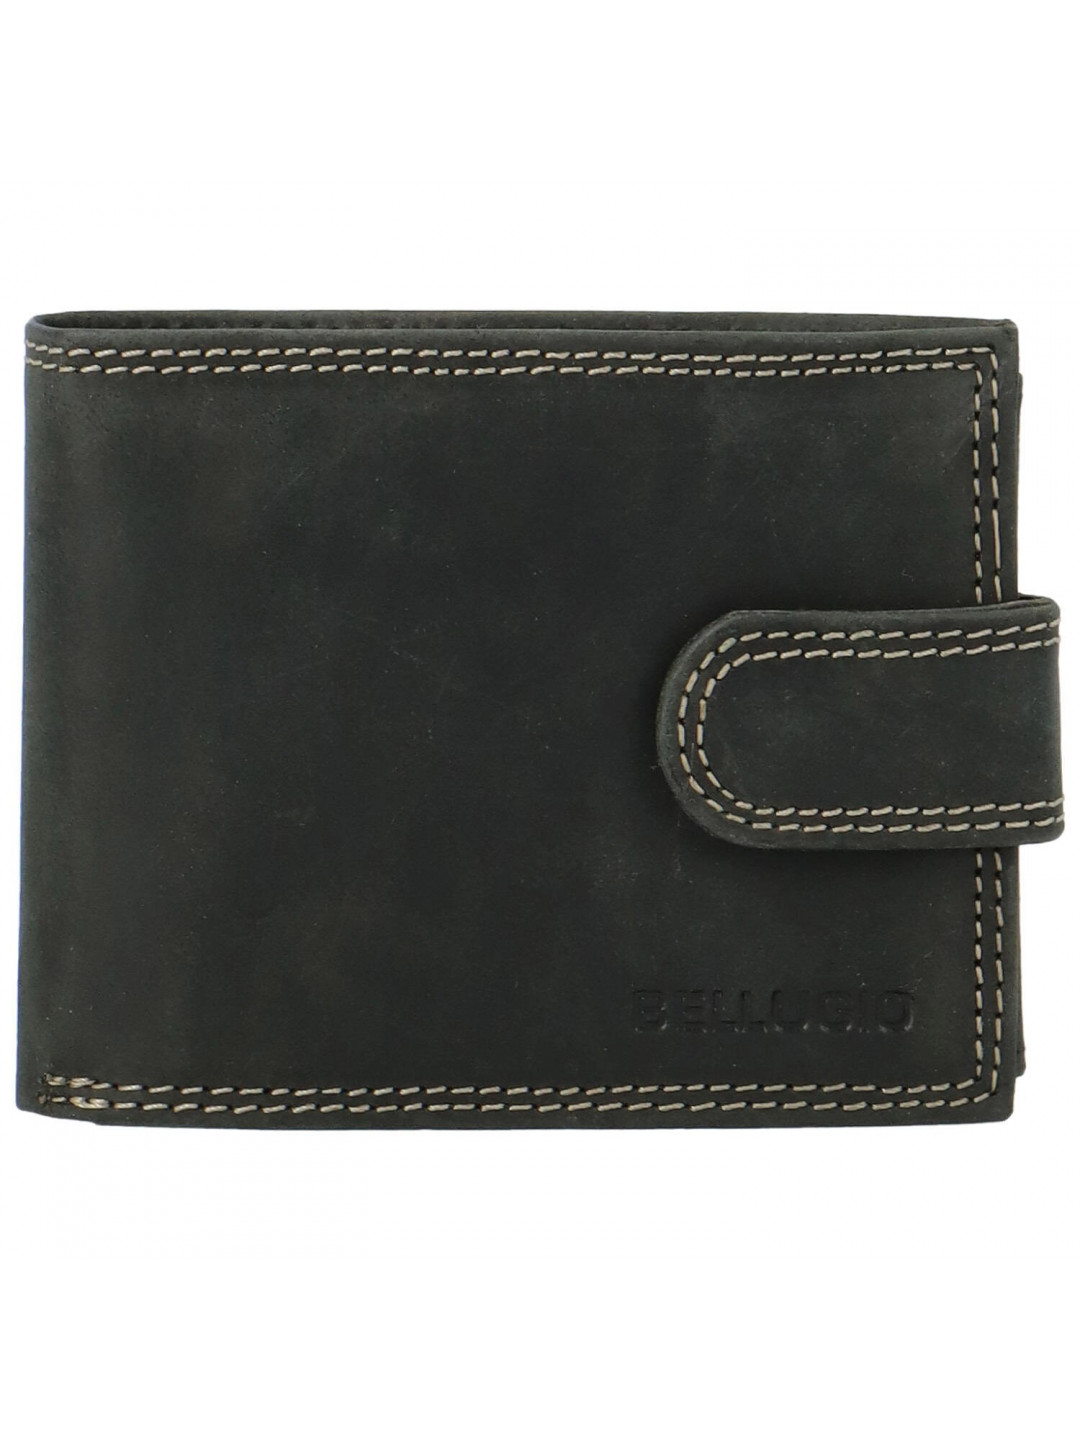 Pánská kožená peněženka Bellugio Mason černá